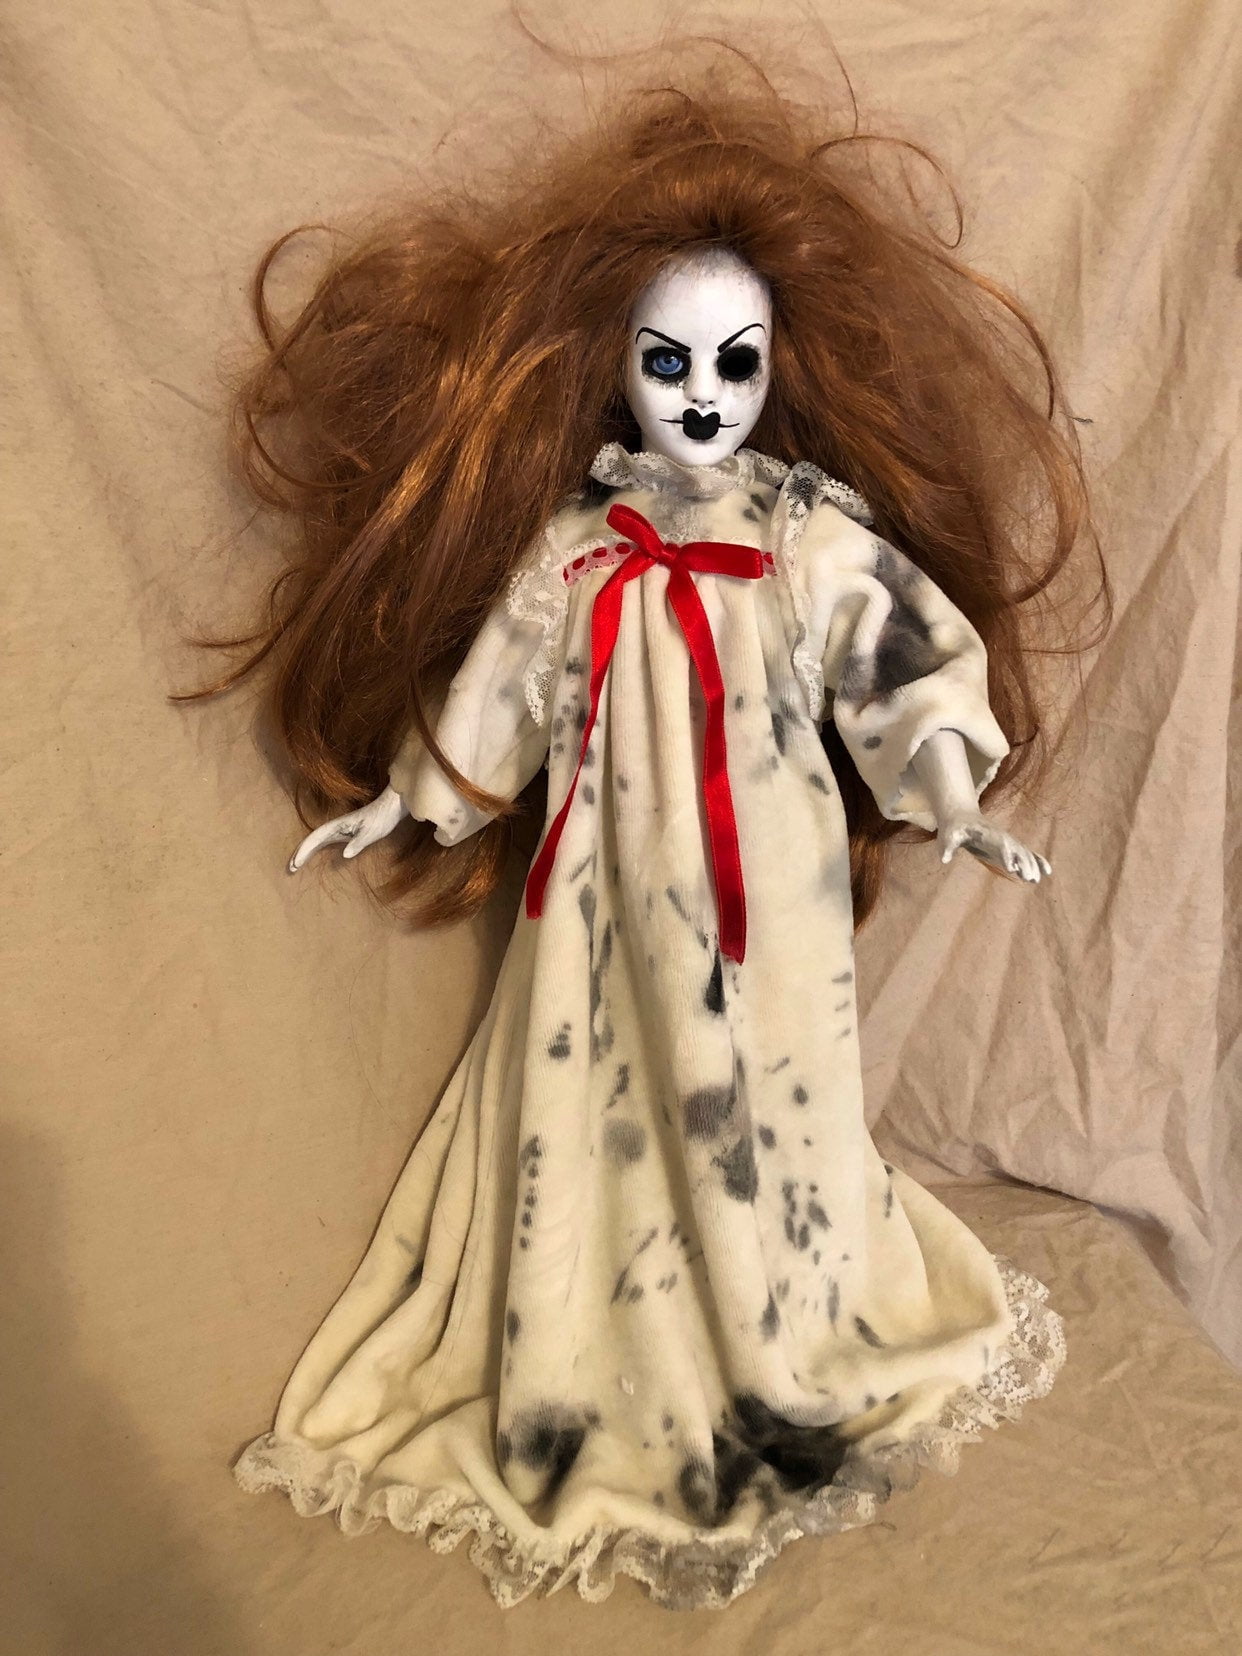 Ooak One Eye Nightgown Creepy Horror Doll Art By Christie Creepydolls Gothic And Horror Dolls